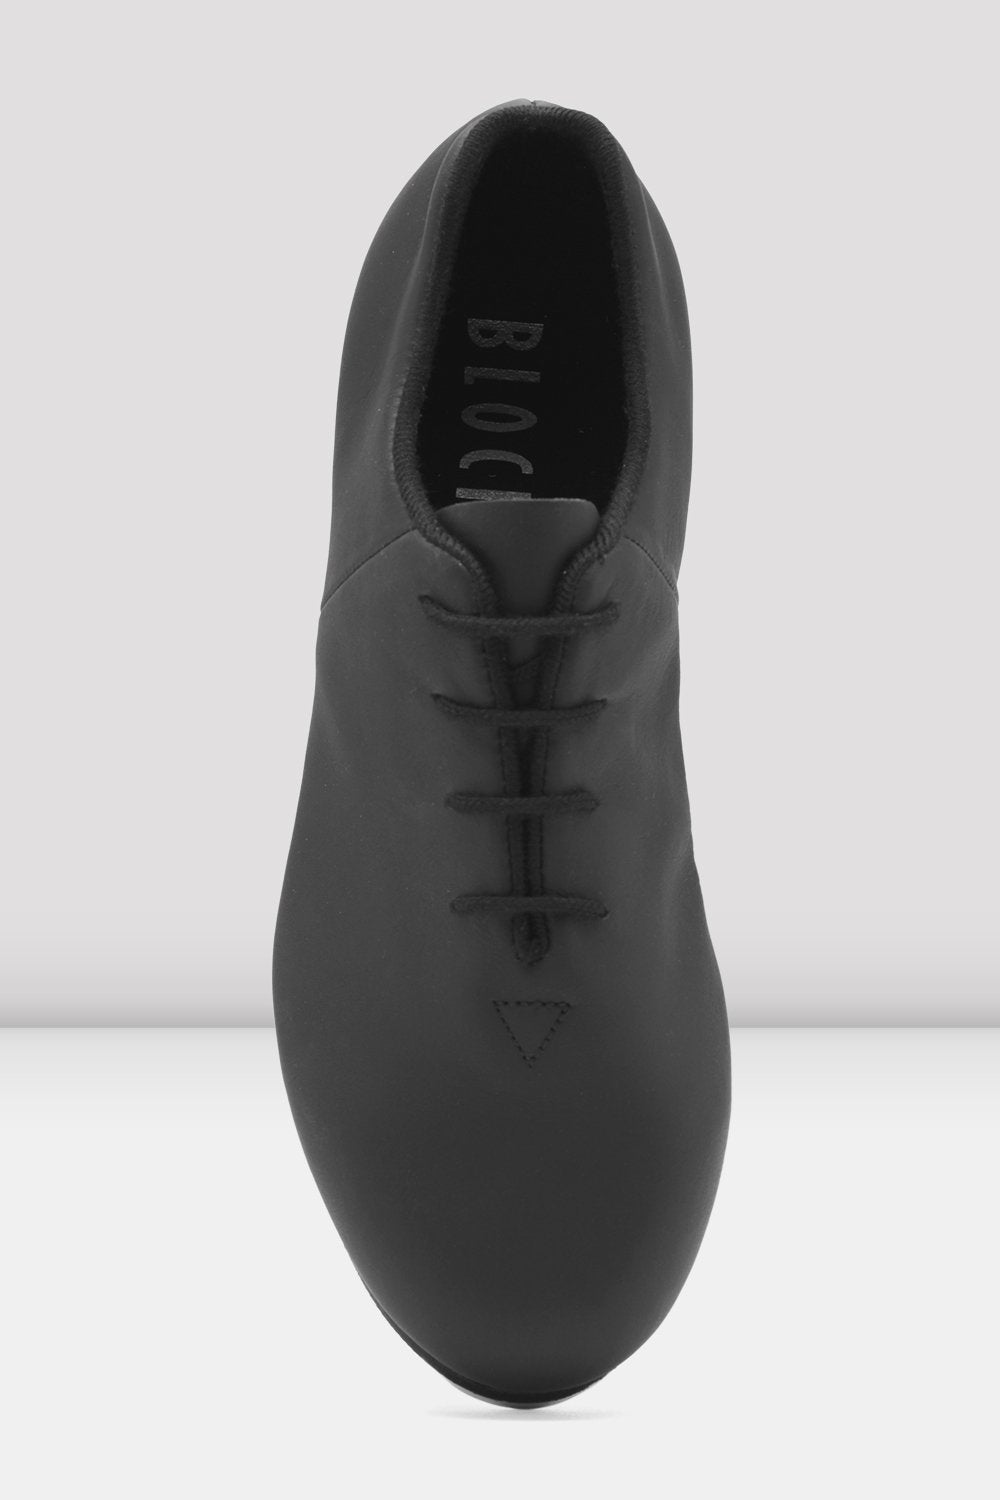 Ladies Tap-Flex Leather Tap Shoes, Black | BLOCH USA – Bloch Dance